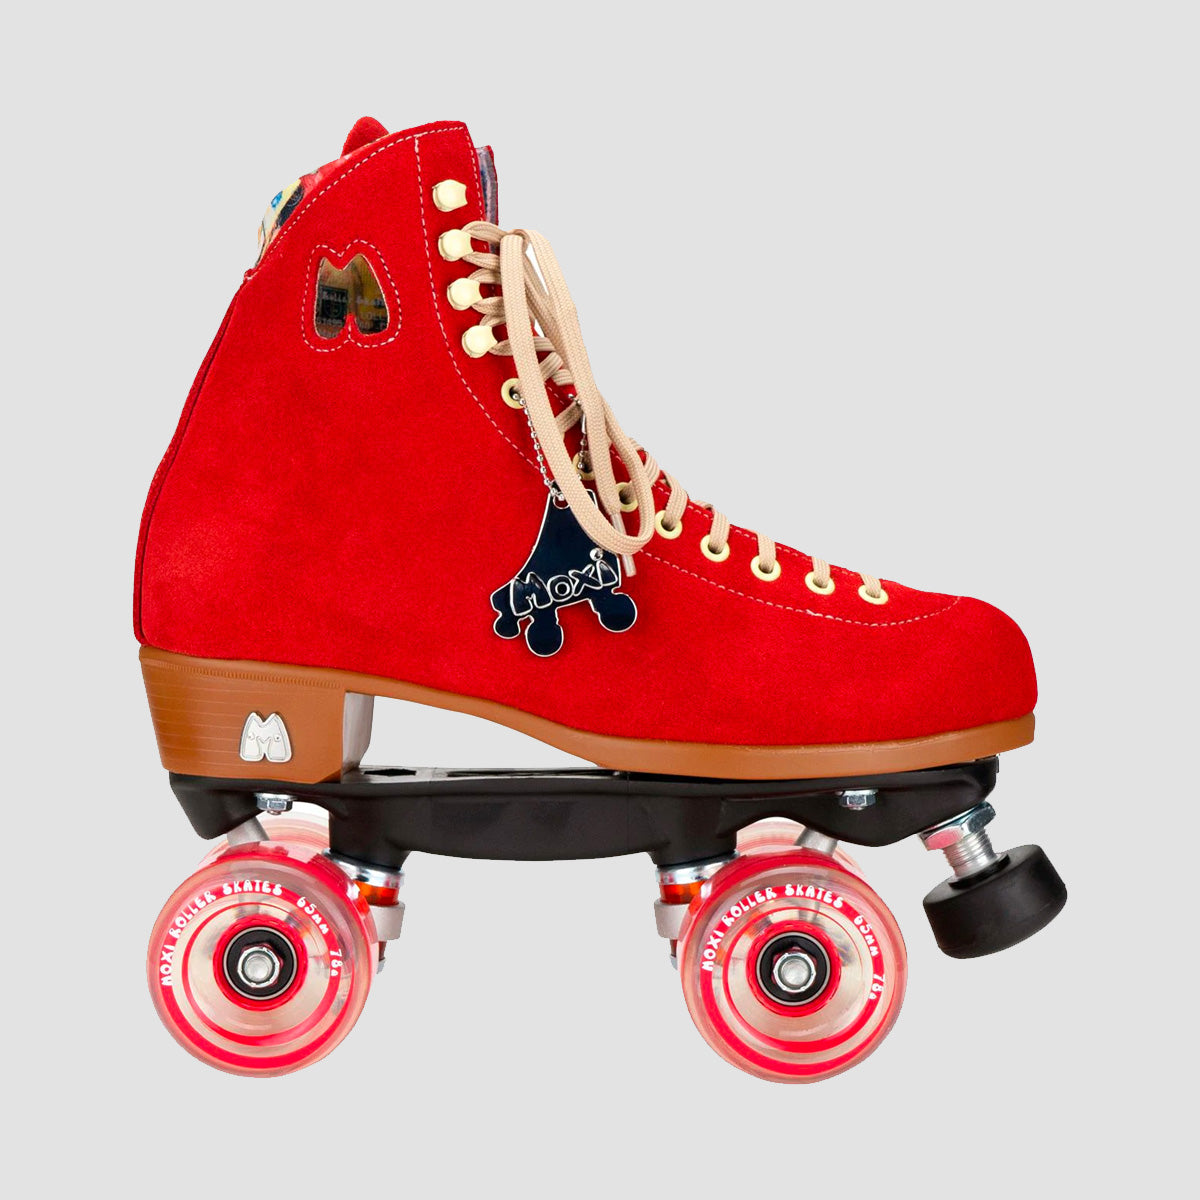 Moxi Lolly Quad Skates Poppy Red